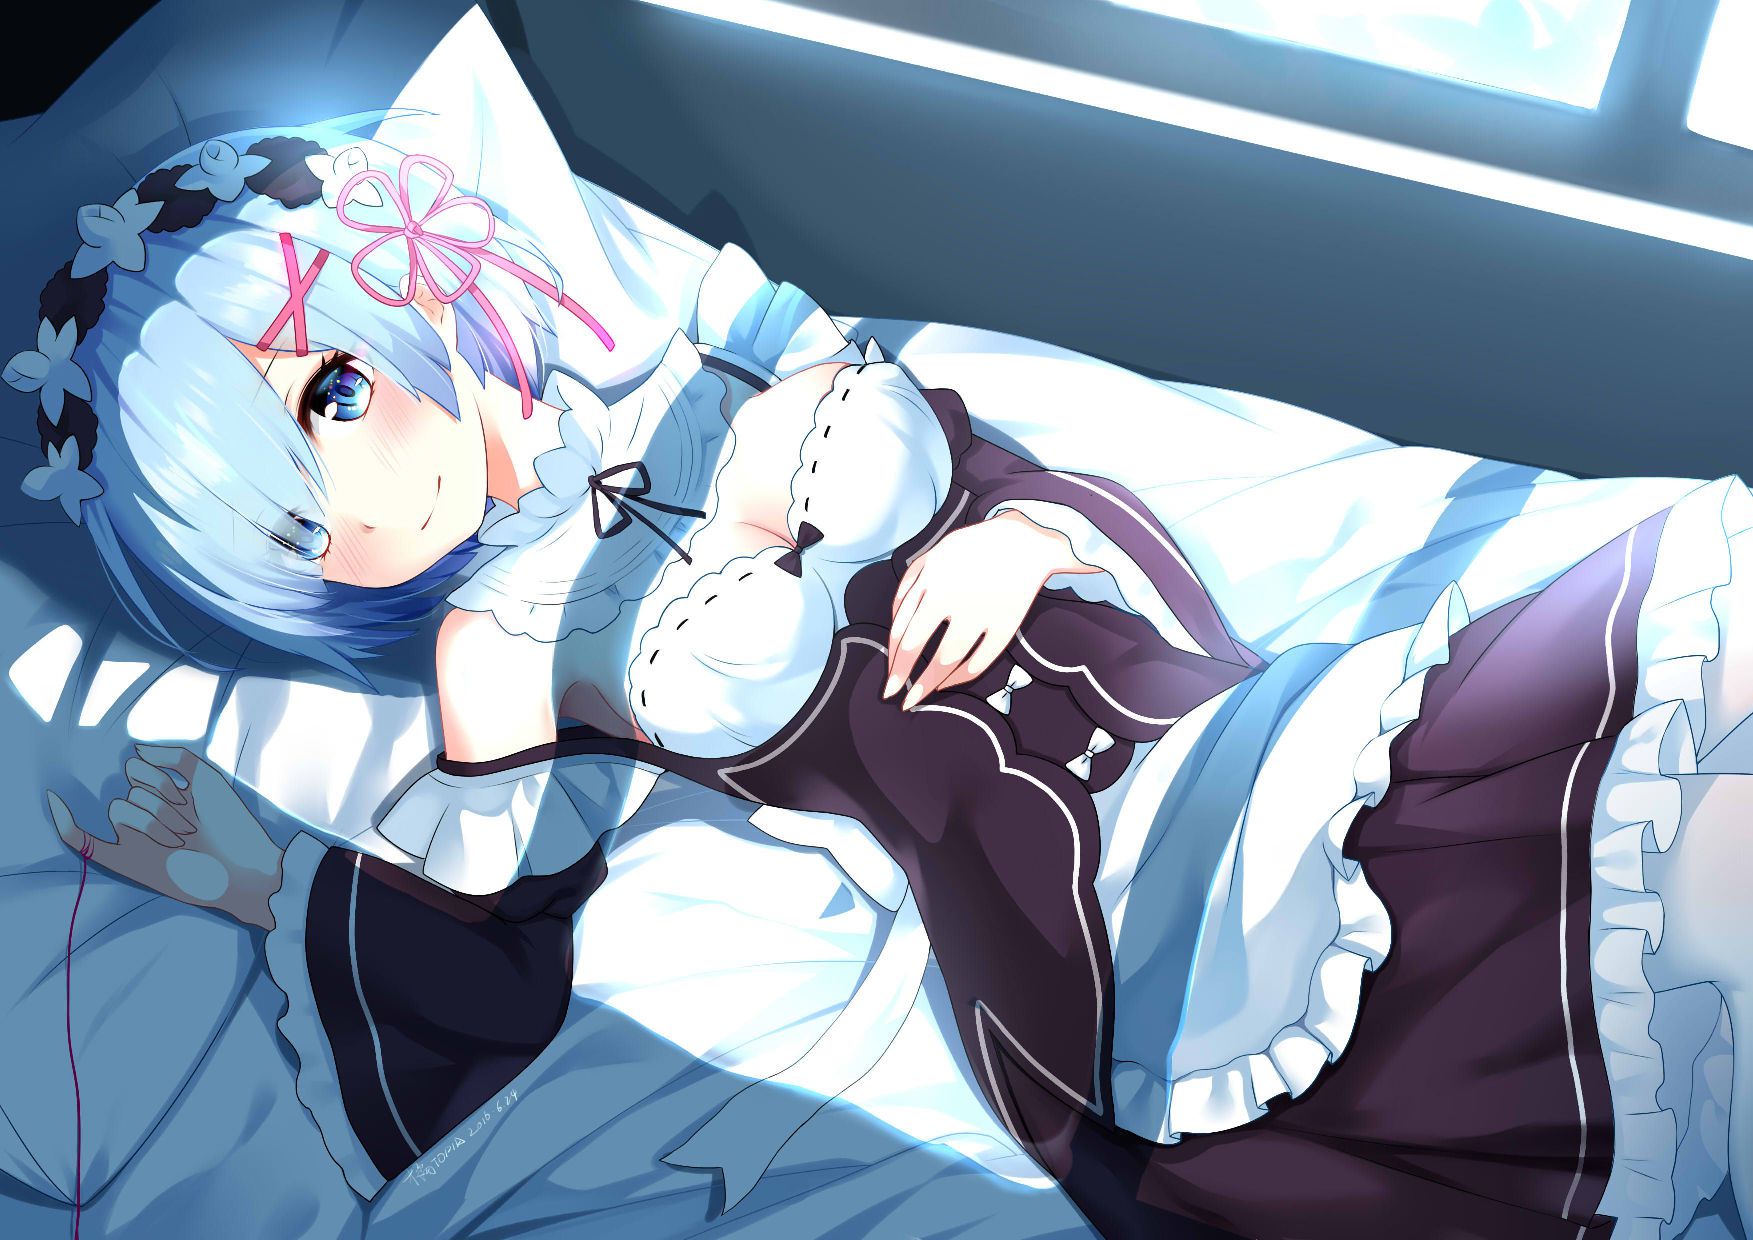 "Rezero" dakimakura REM's popular release postponed past the pillow cover image of wwwwwwwwwww 6